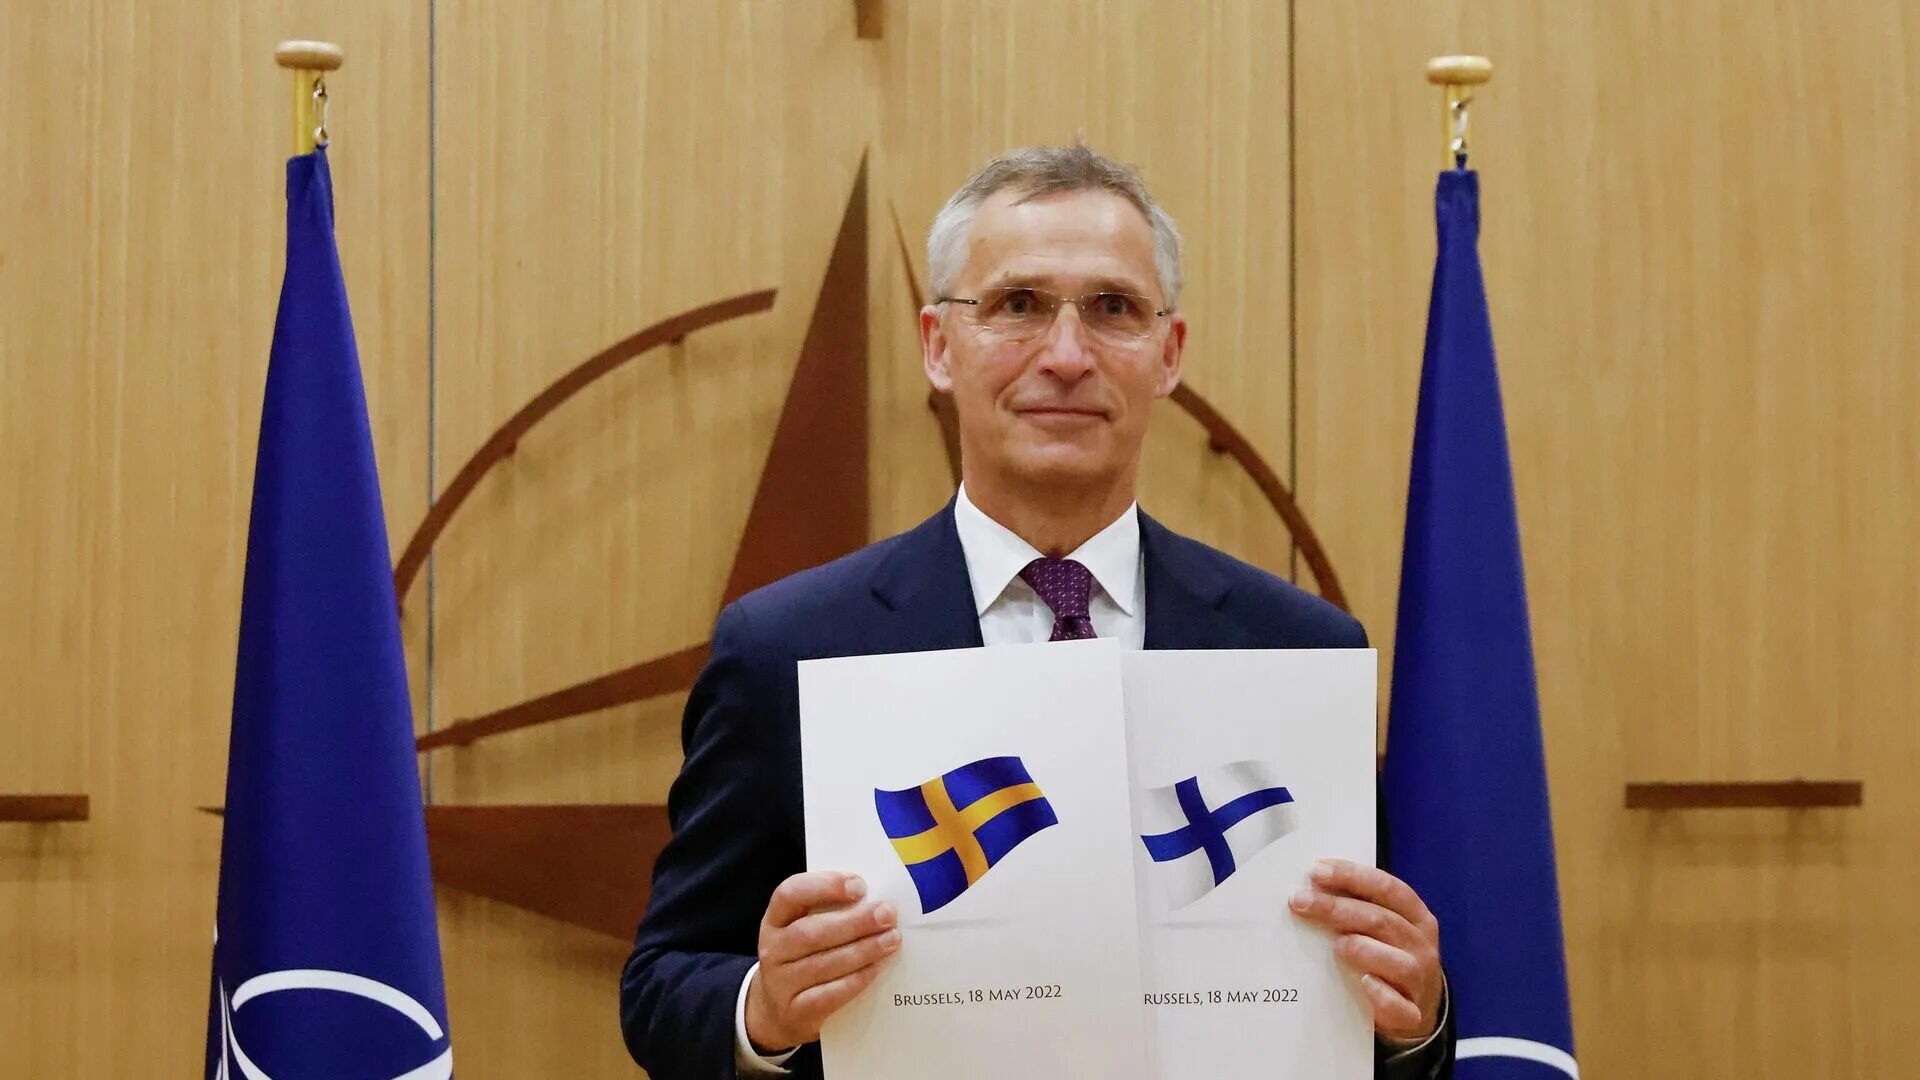 Йенс Столтенберг 2022. Швеция и Финляндия вступление в НАТО. Швеция в НАТО 2022. Генеральный секретарь НАТО.